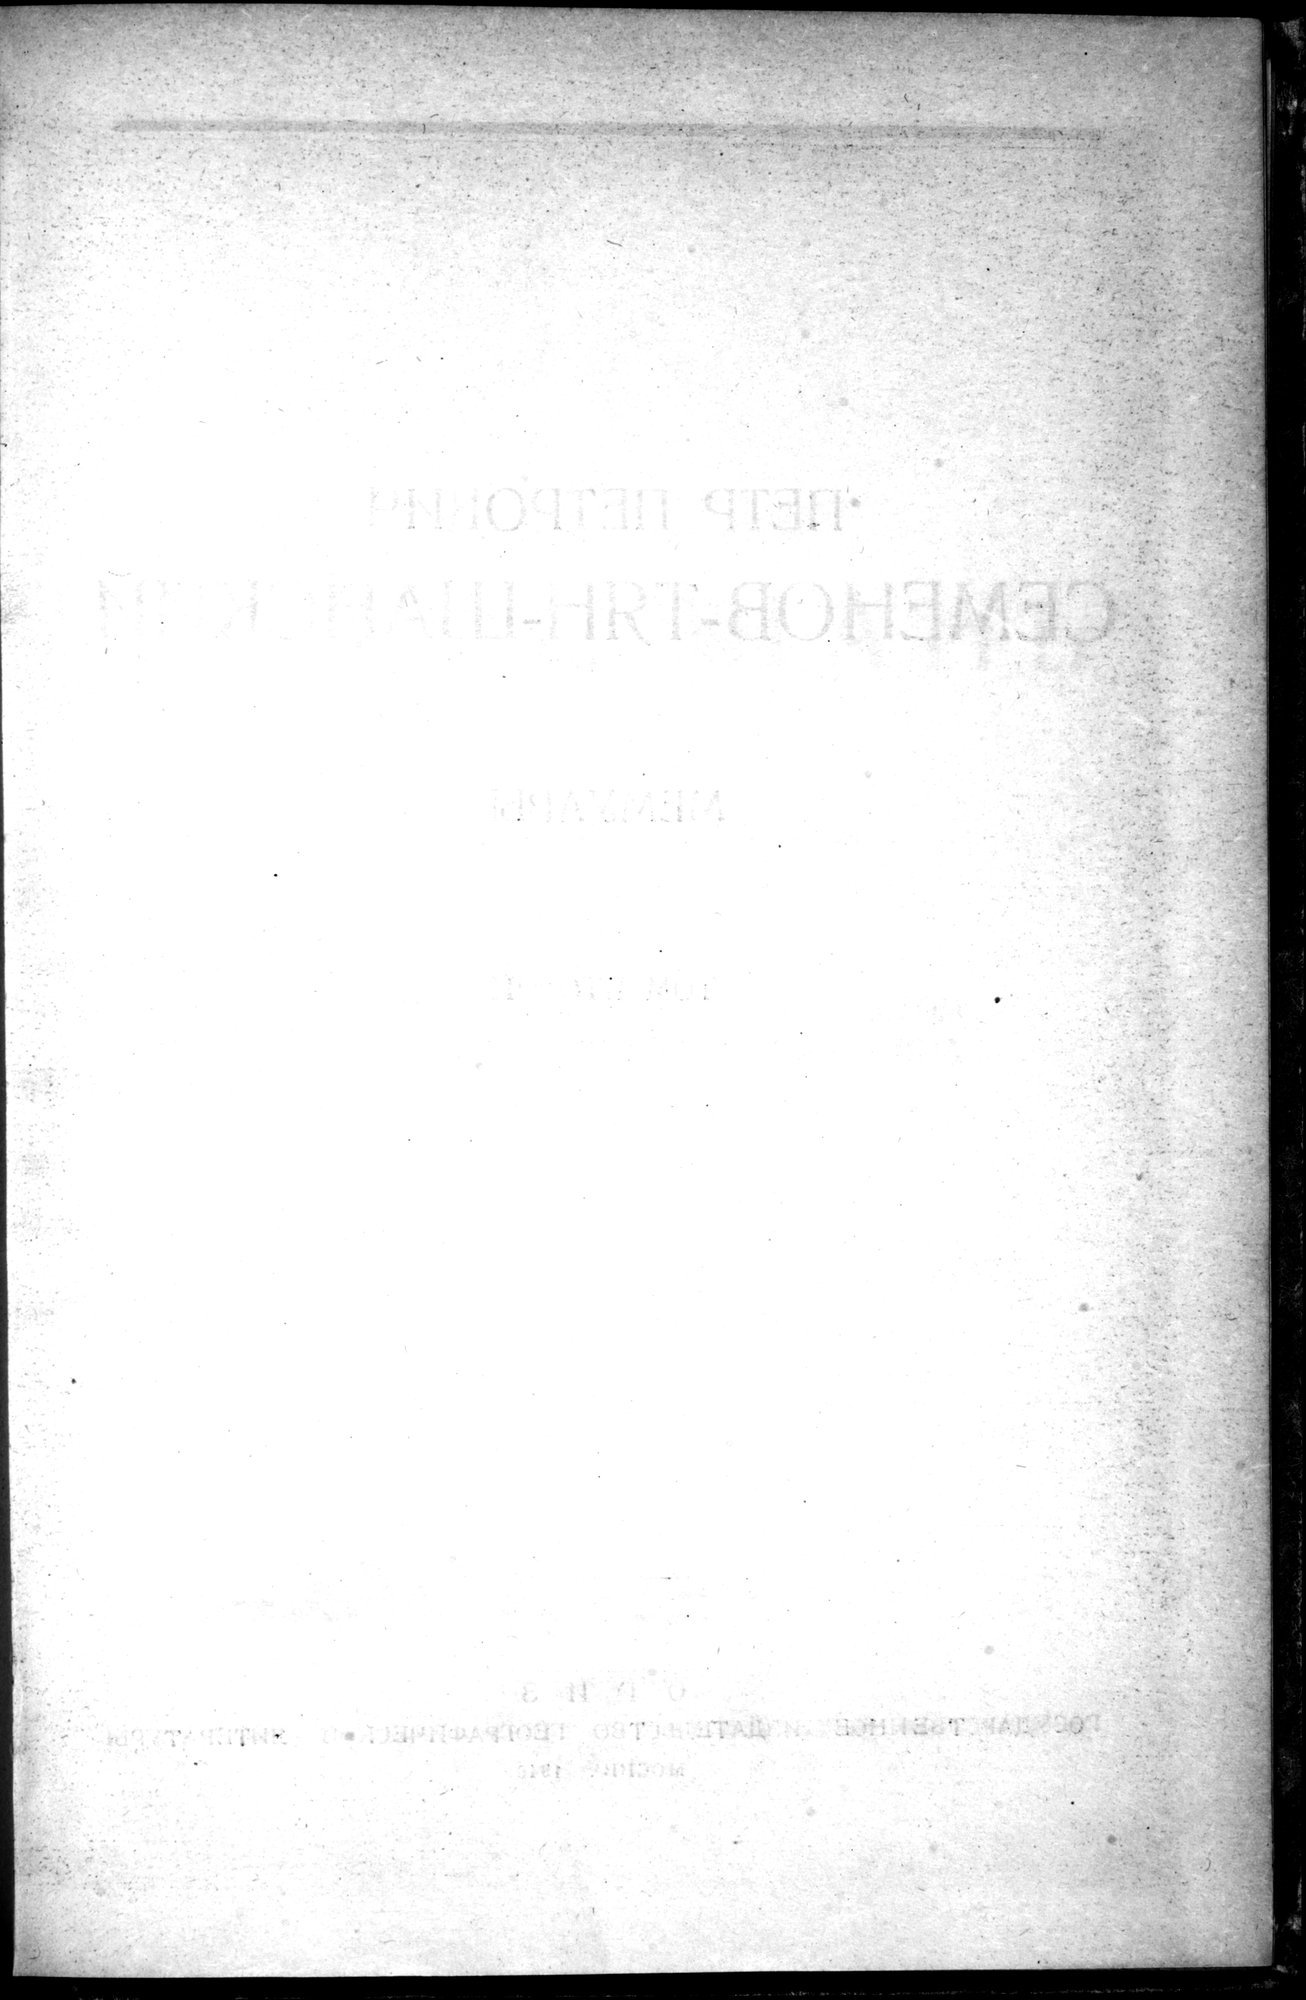 Puteshestvie v Tian' - Shan' v 1856-1857 godakh : vol.1 / 5 ページ（白黒高解像度画像）